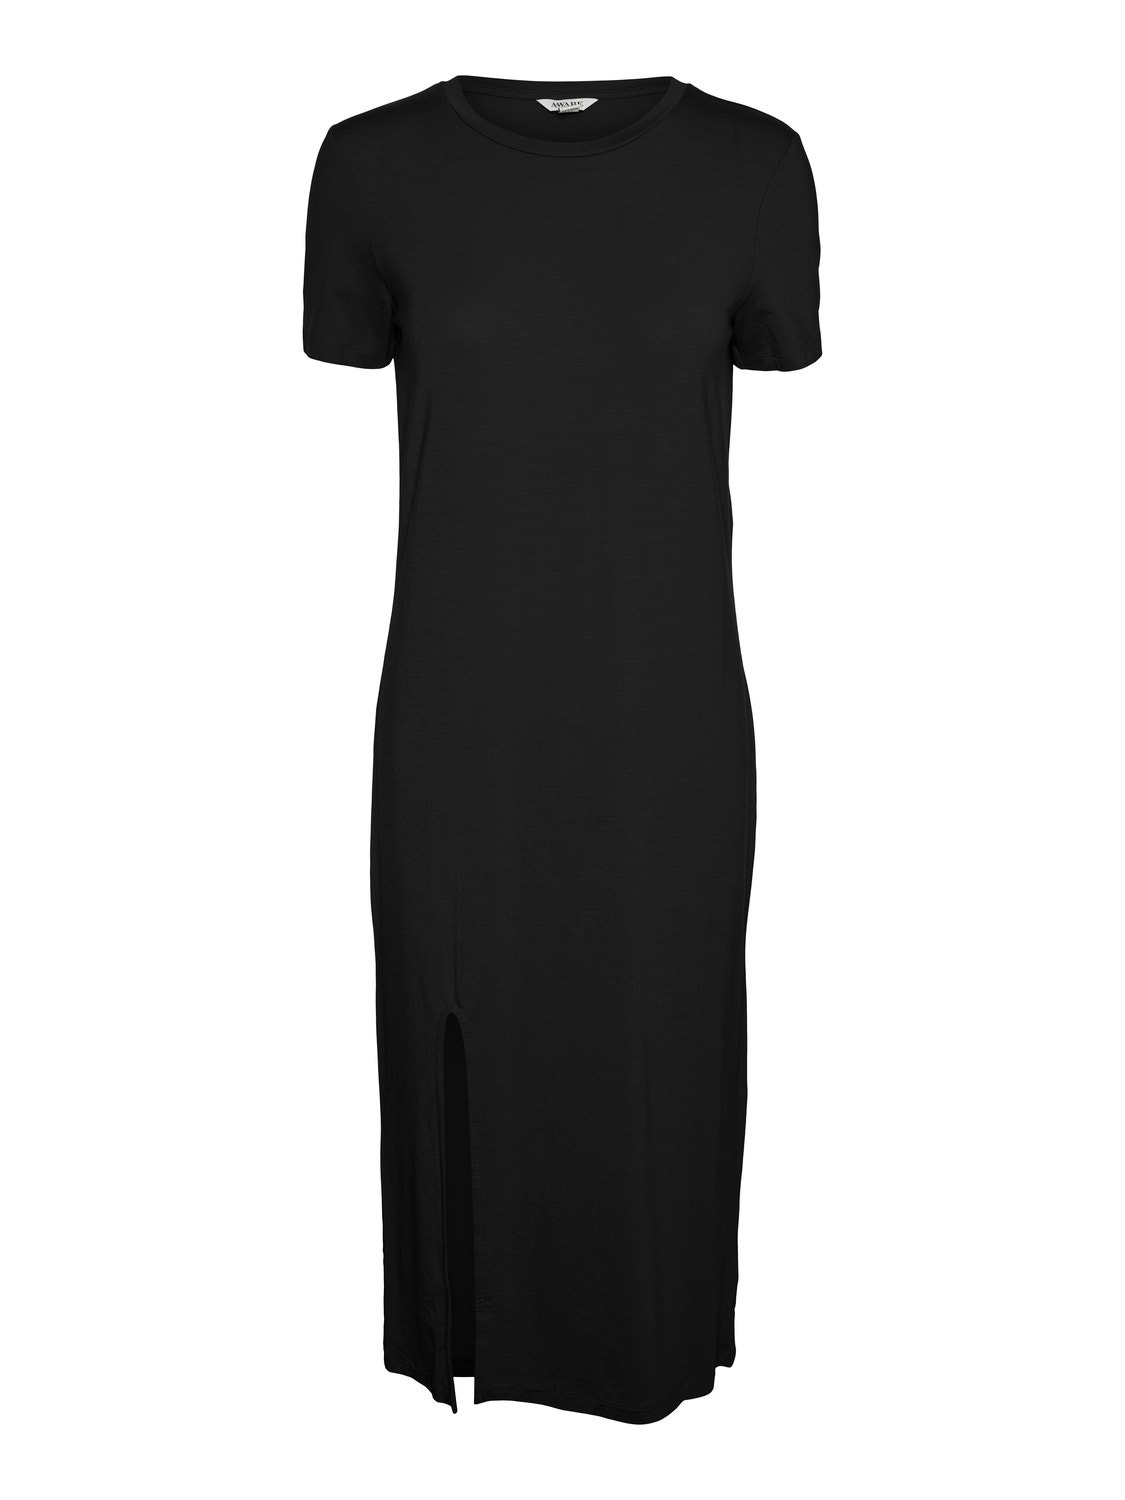 Vero Moda VMKELLYJO Midi dress -Black - 10307364